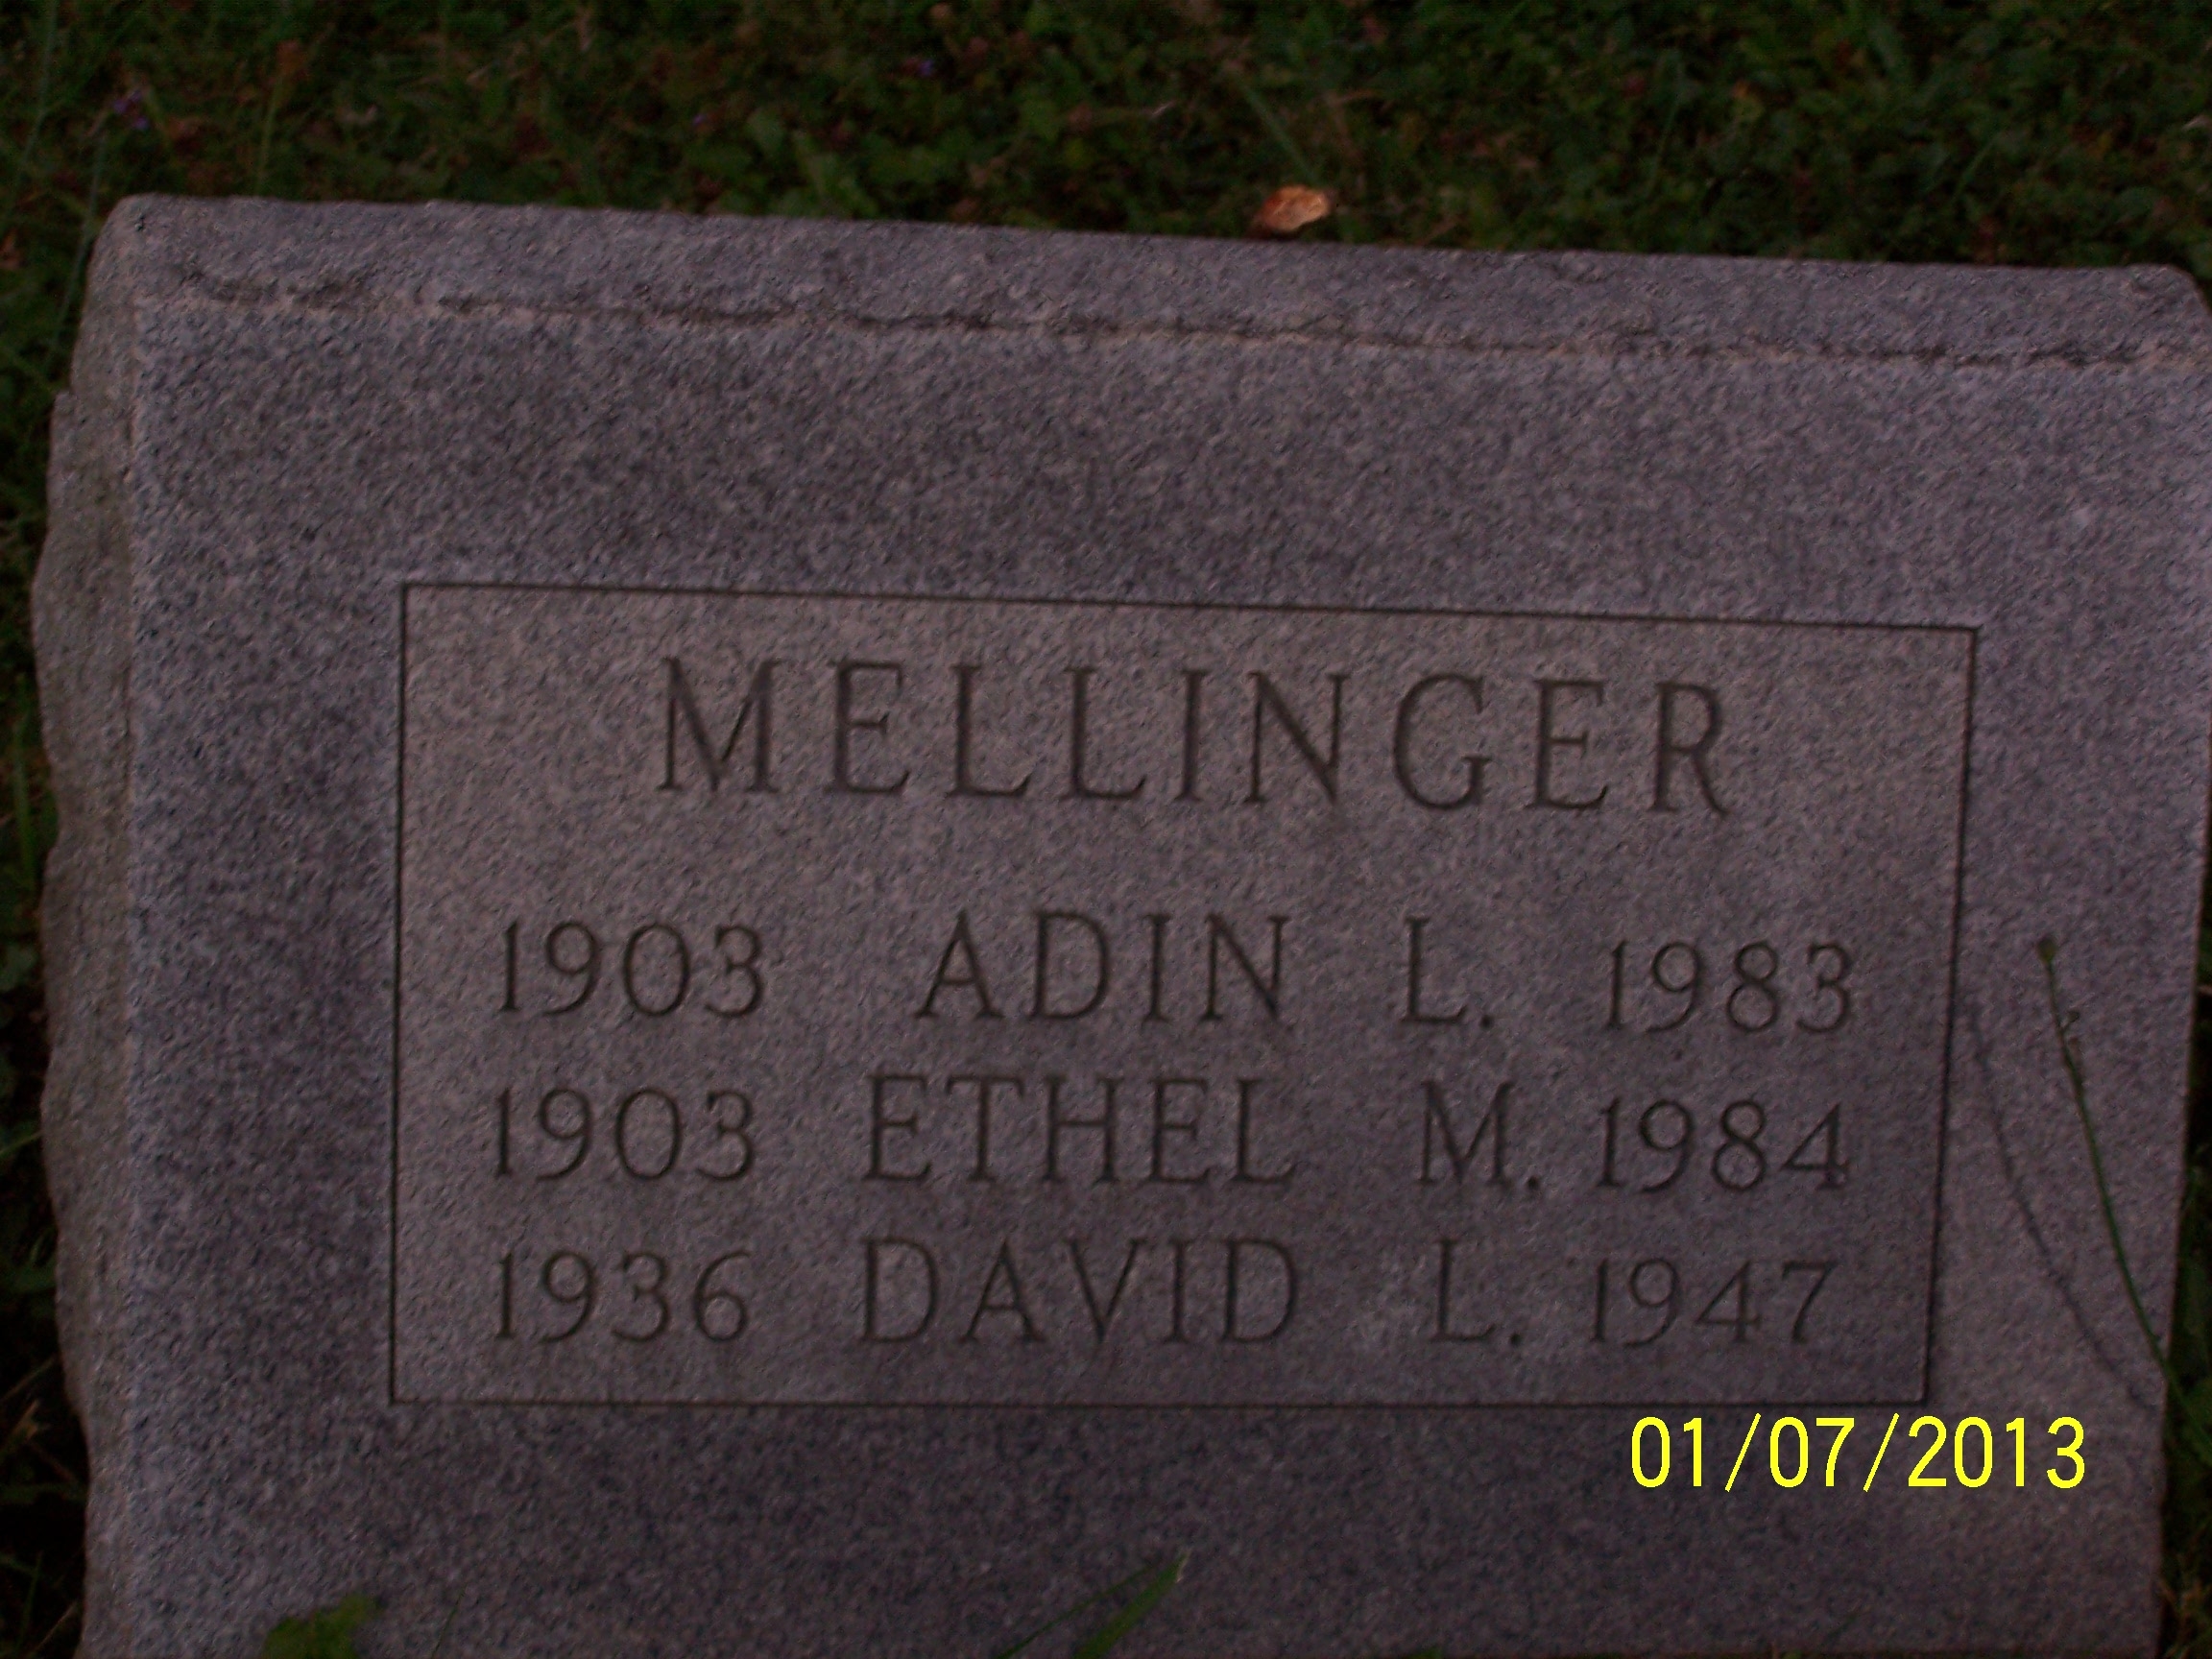 Adin, Ethel, & David Mellinger gravesite